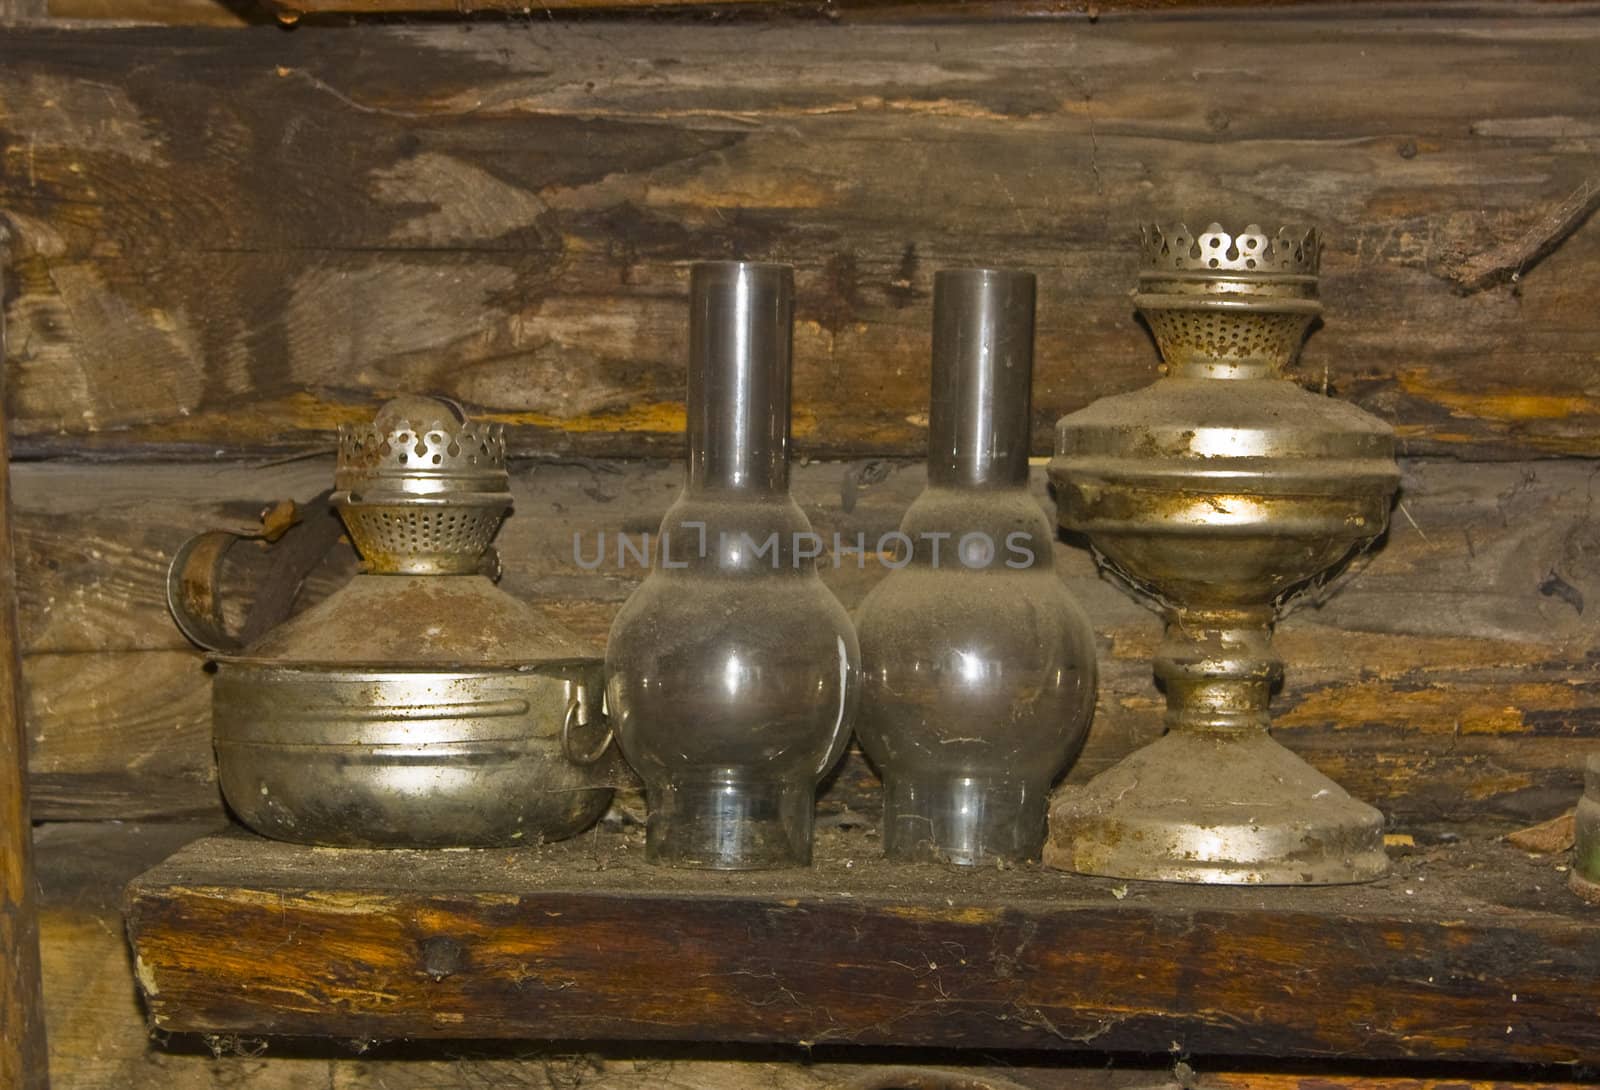 Image of two old kerosene lamps, standings in a dust on a wooden shelf